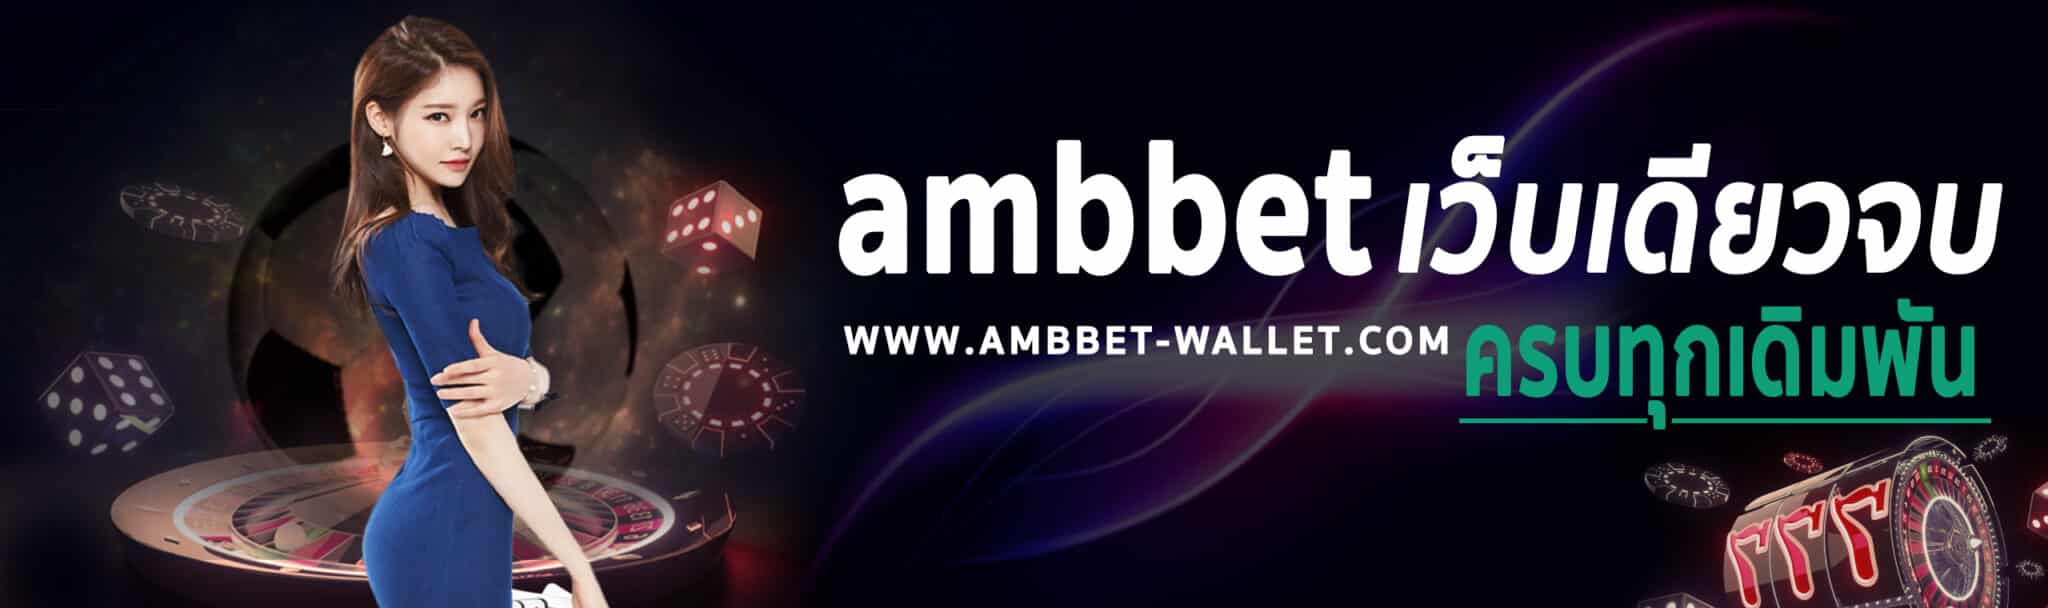 ambbet-wallet true